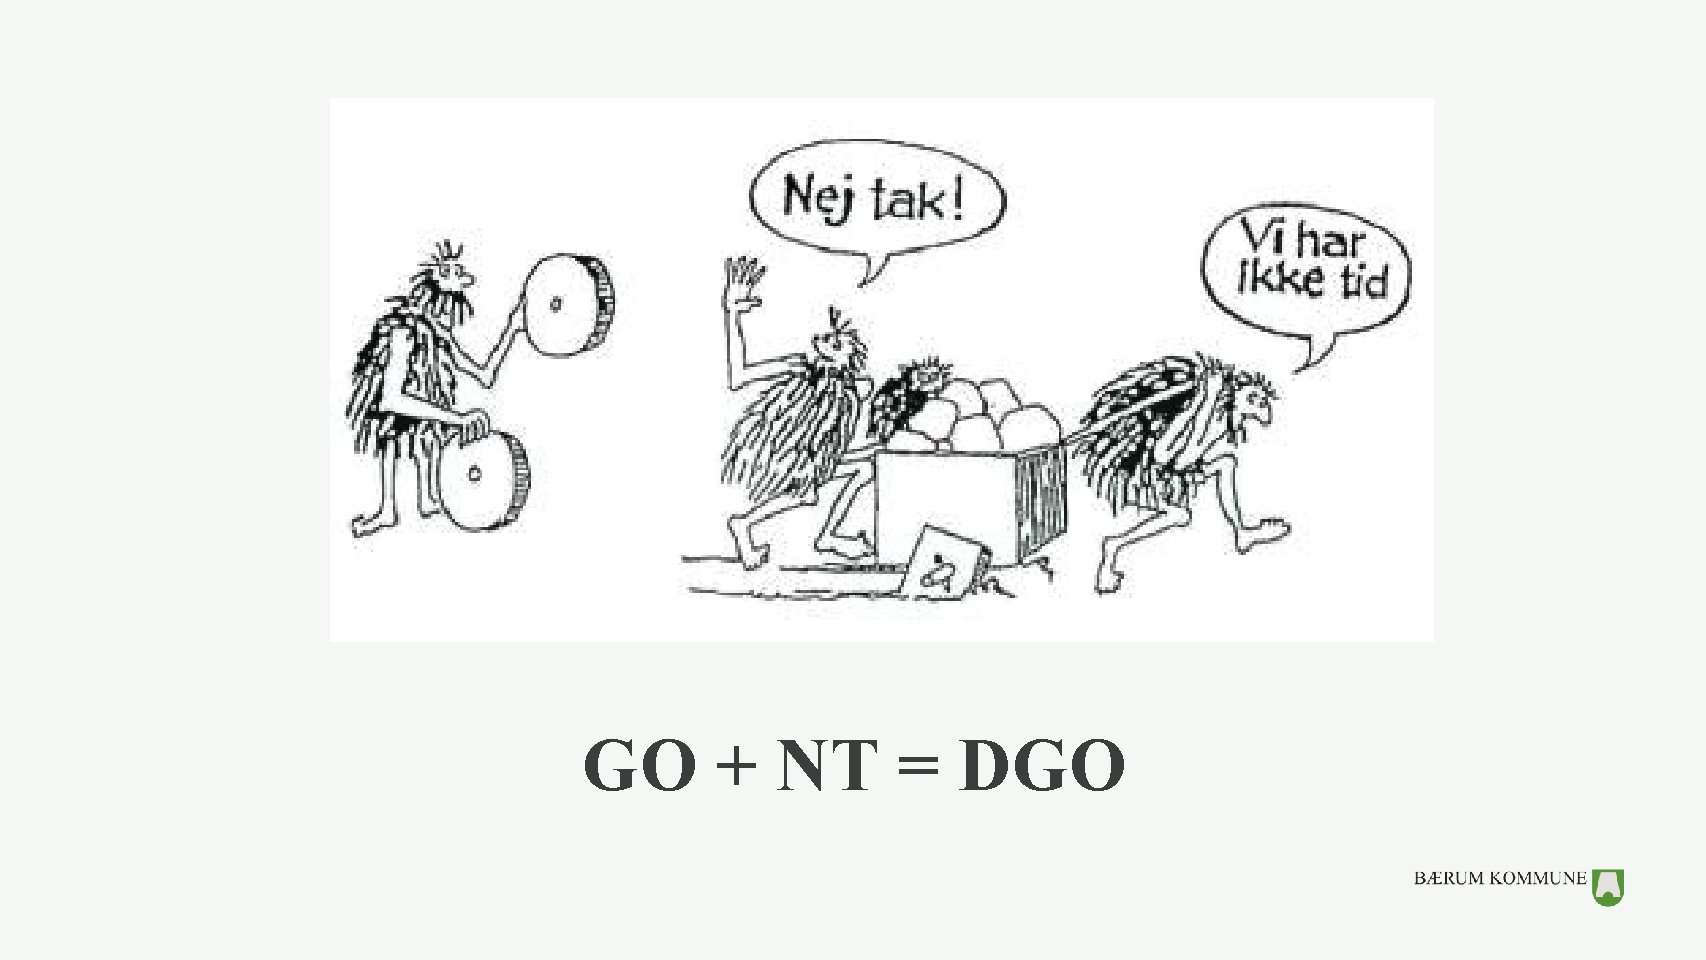 GO + NT = DGO 